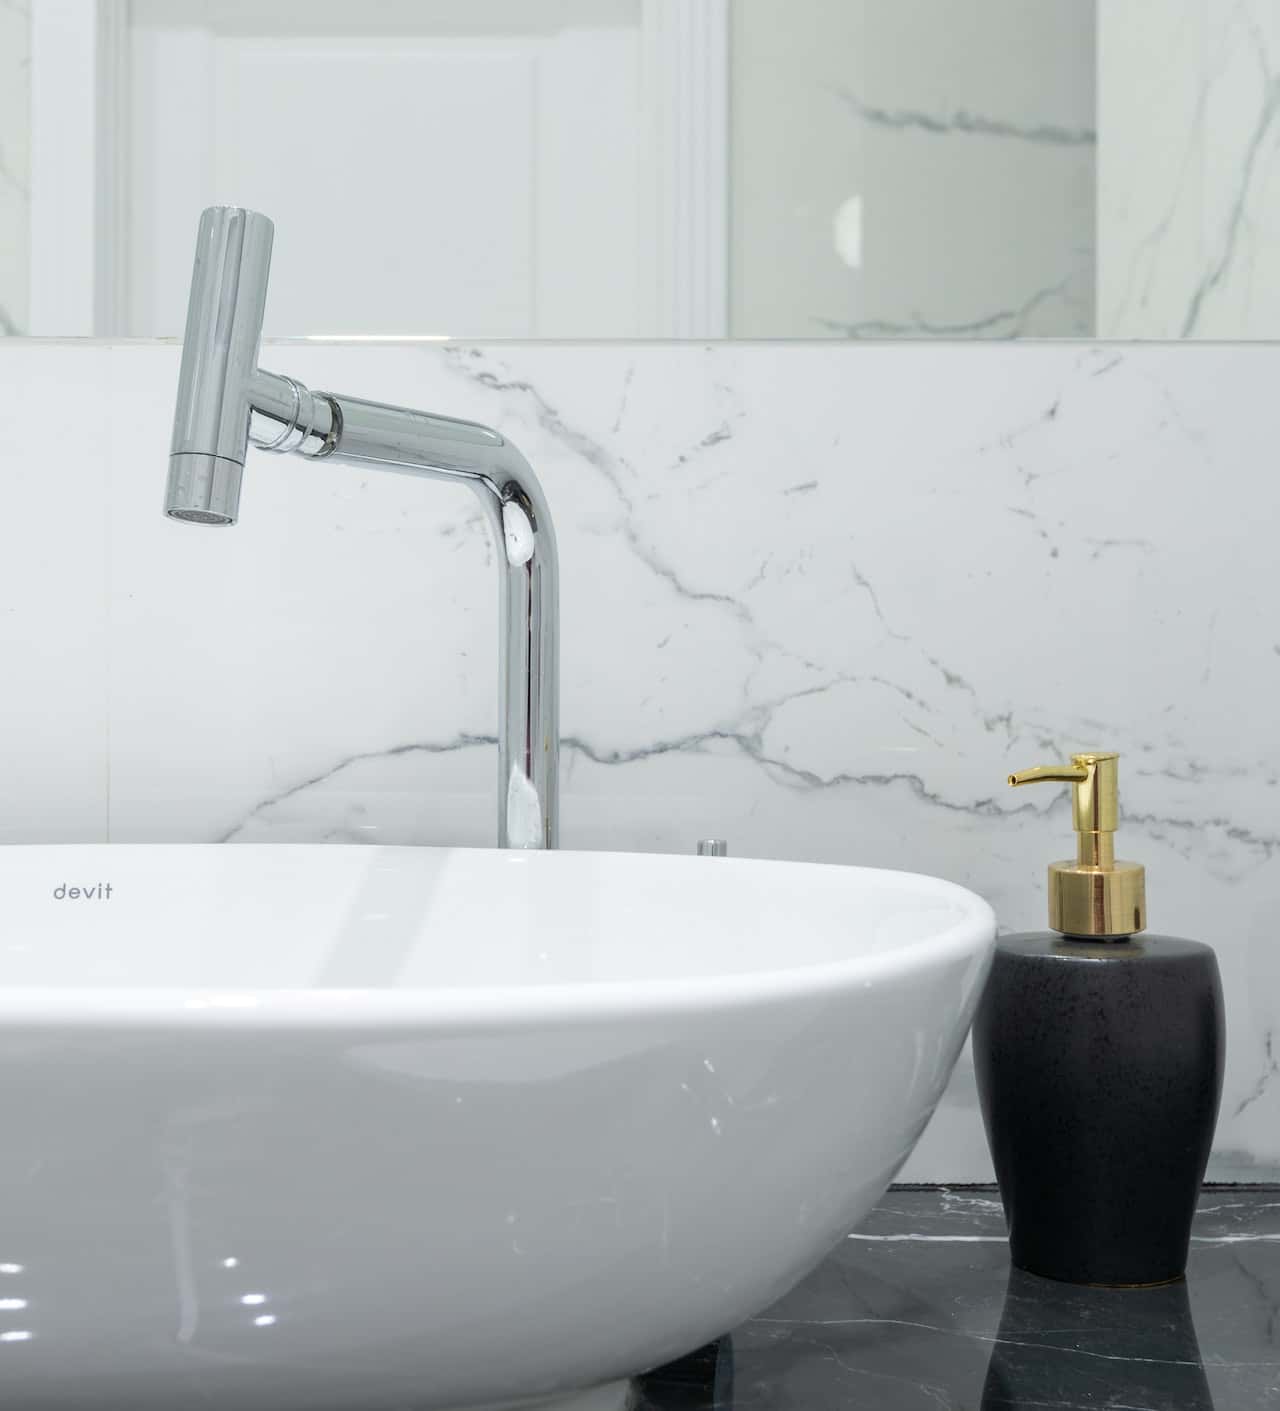 spout tap design for wash basin